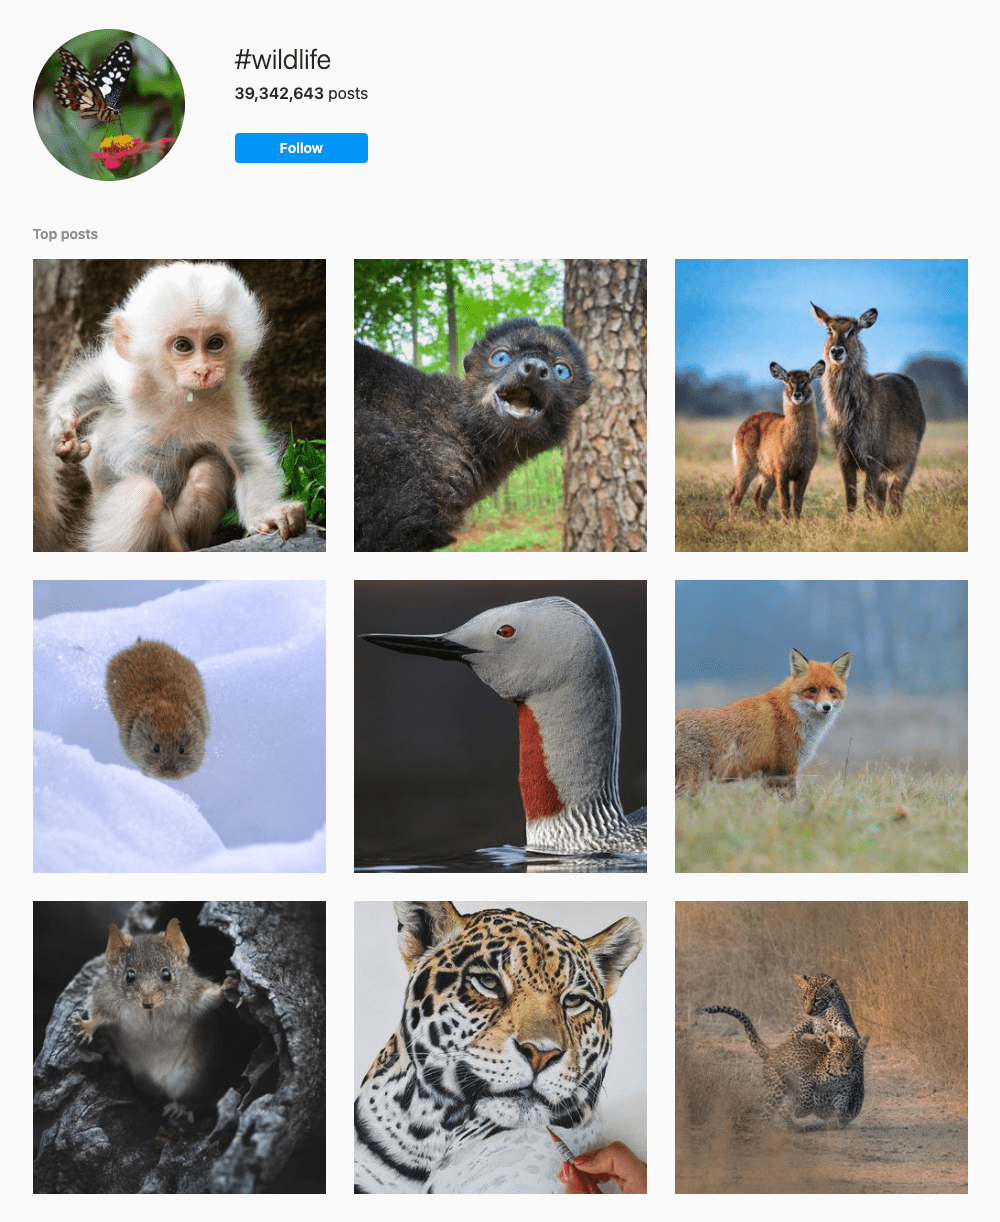 #wildlife Hashtags for Instagram